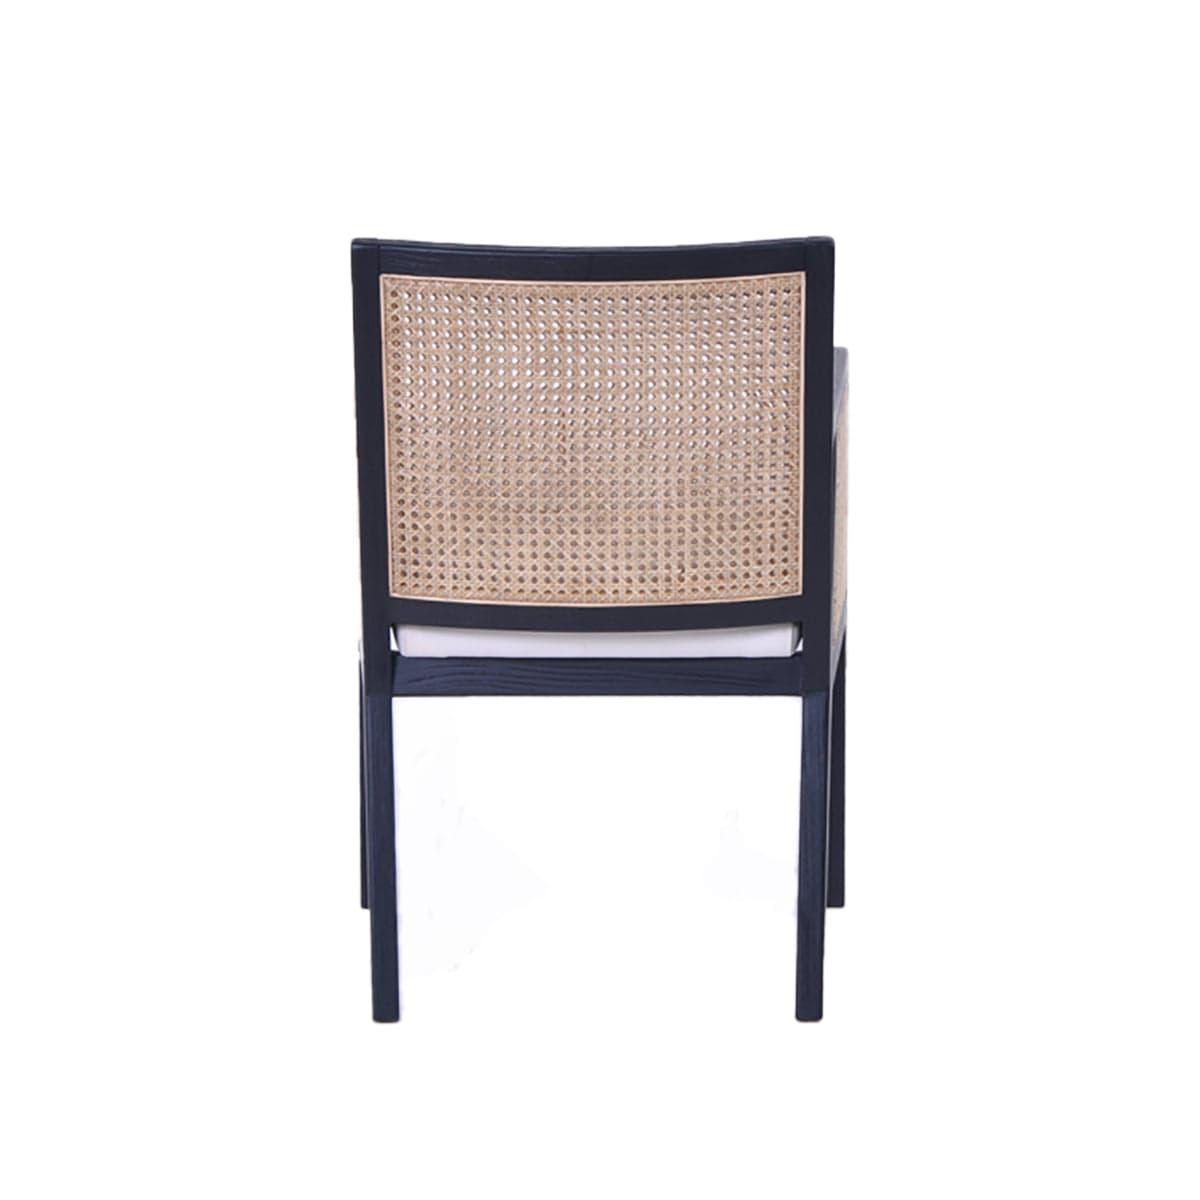 House Journey Kane Rattan Black Carver Dining Chair - White Linen